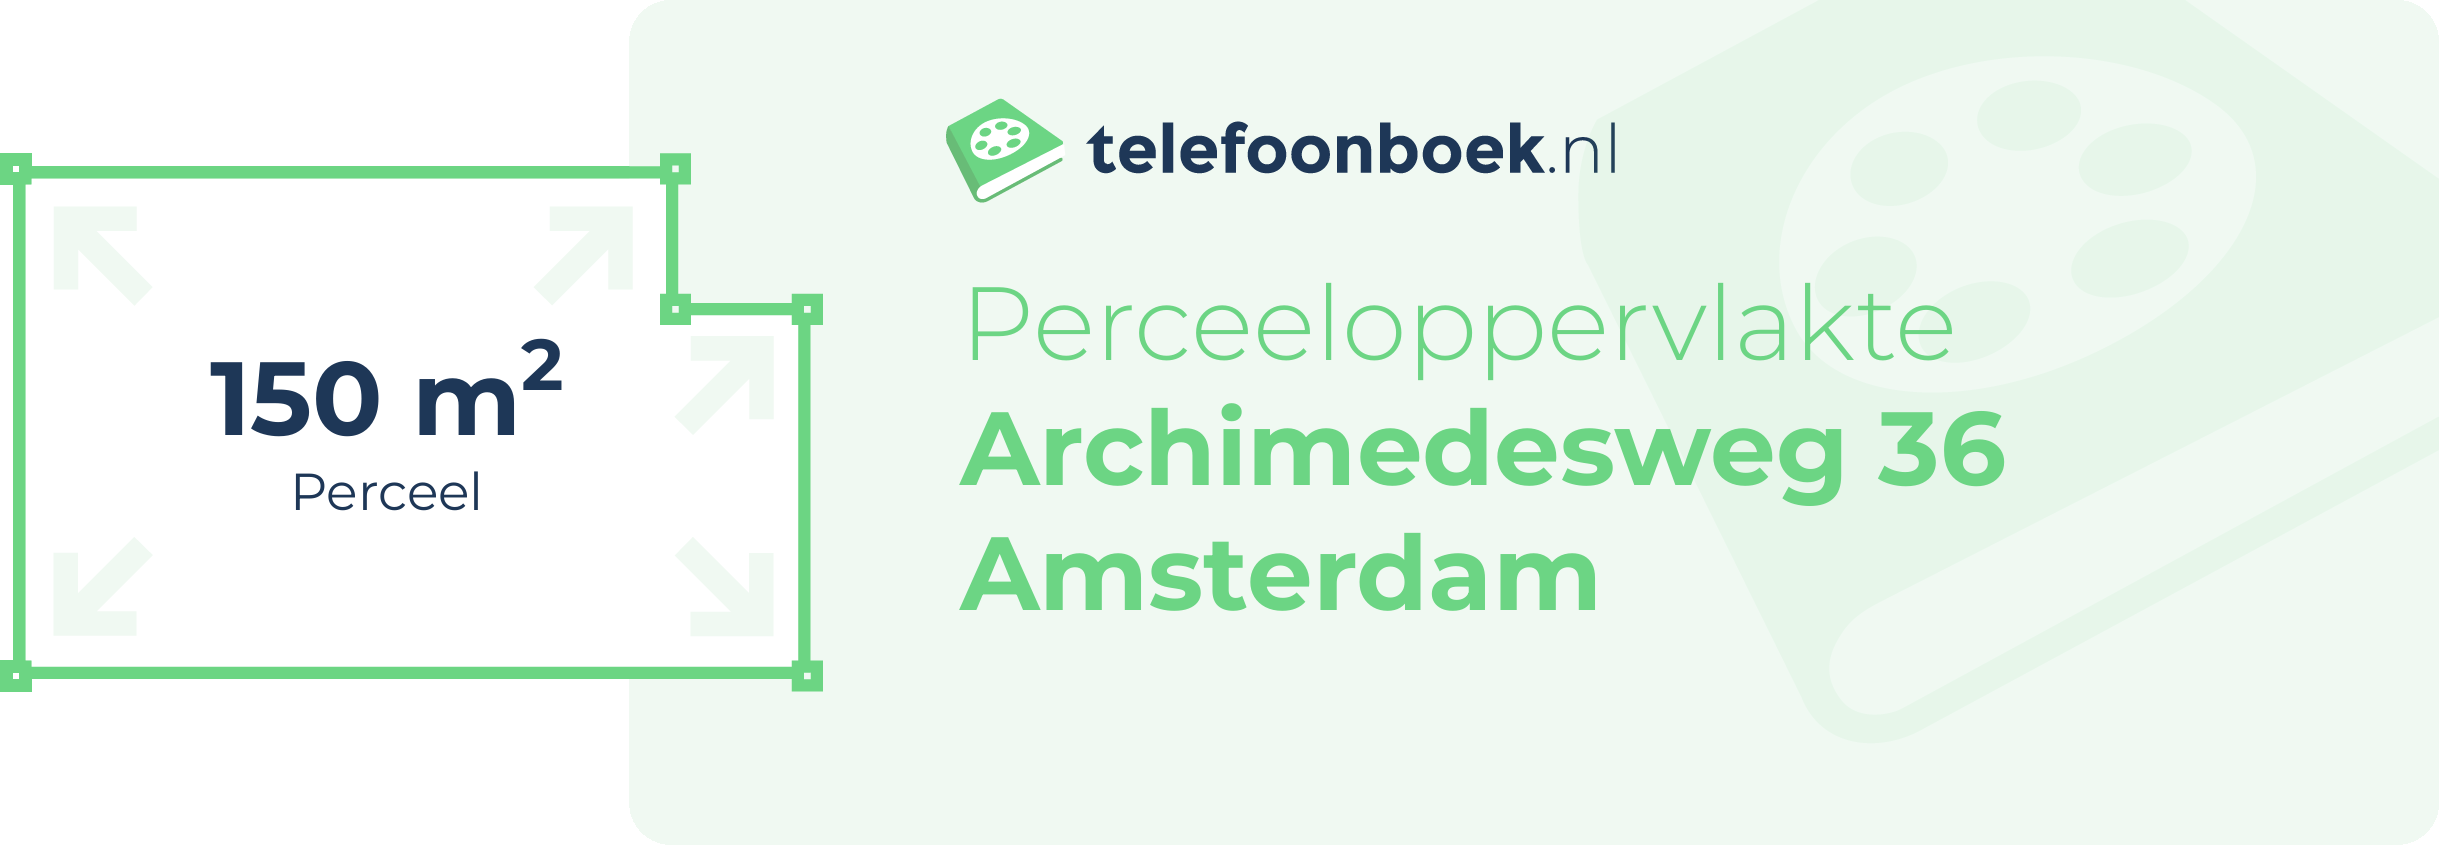 Perceeloppervlakte Archimedesweg 36 Amsterdam